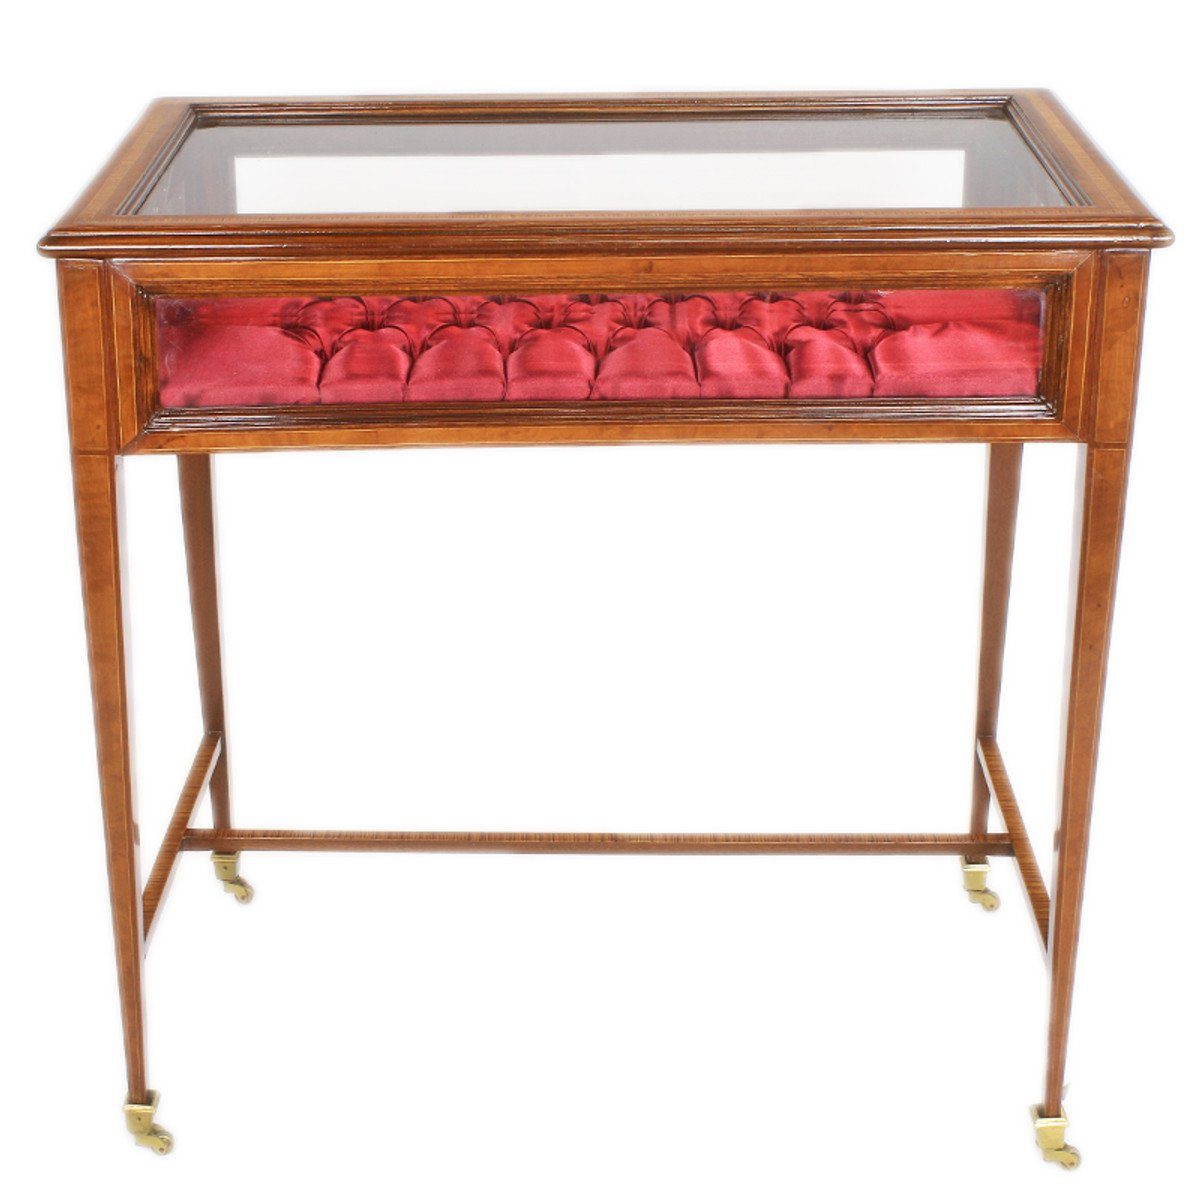 Casa Padrino Beistelltisch Barock Vitrinen Schaukasten Tisch mit aufklappbarem Deckel 80 x50 x H80 cm - Beistelltisch